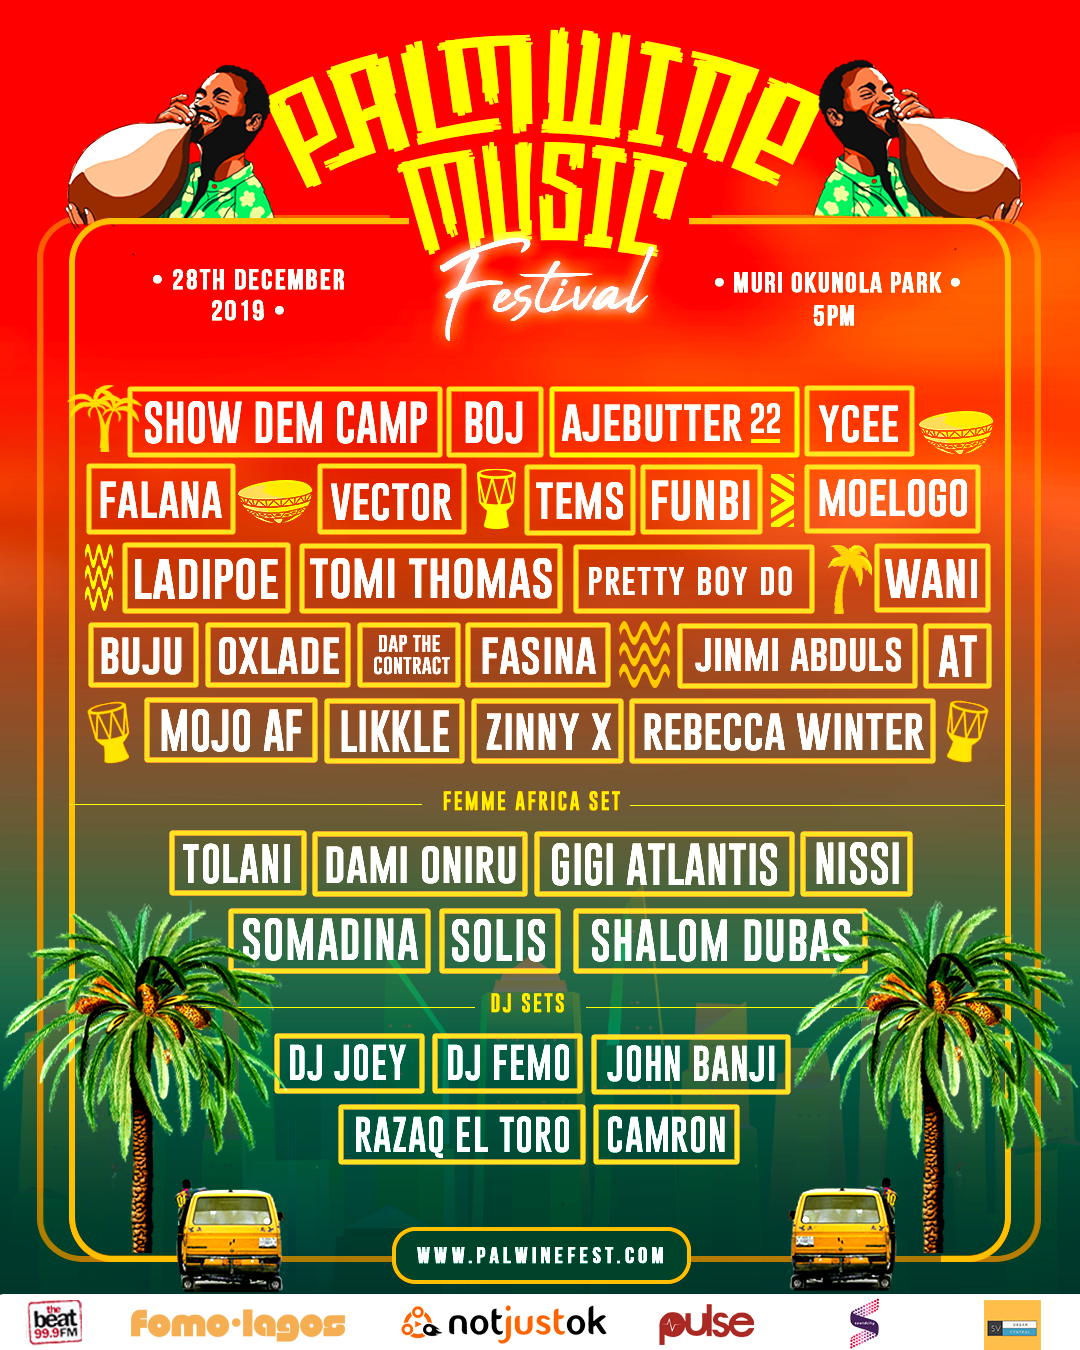 Show Dem Camp Announces "Palmwine Music Festival" 2019